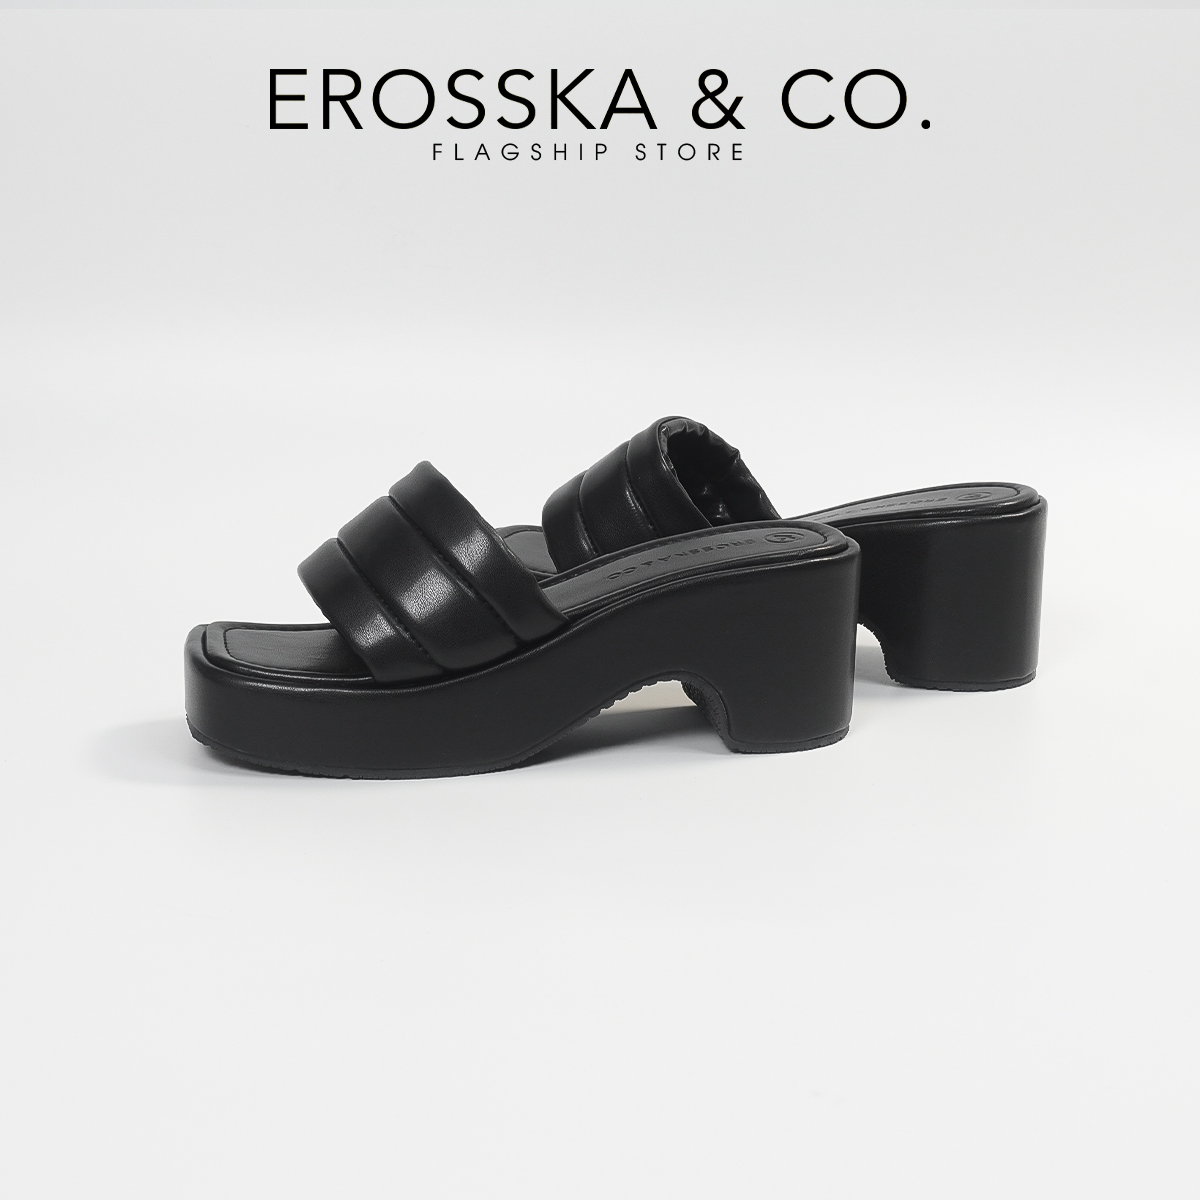 Erosska - Dép nữ thời trang quai ngang đế xuồng trẻ trung cao 7cm màu nude - SB023